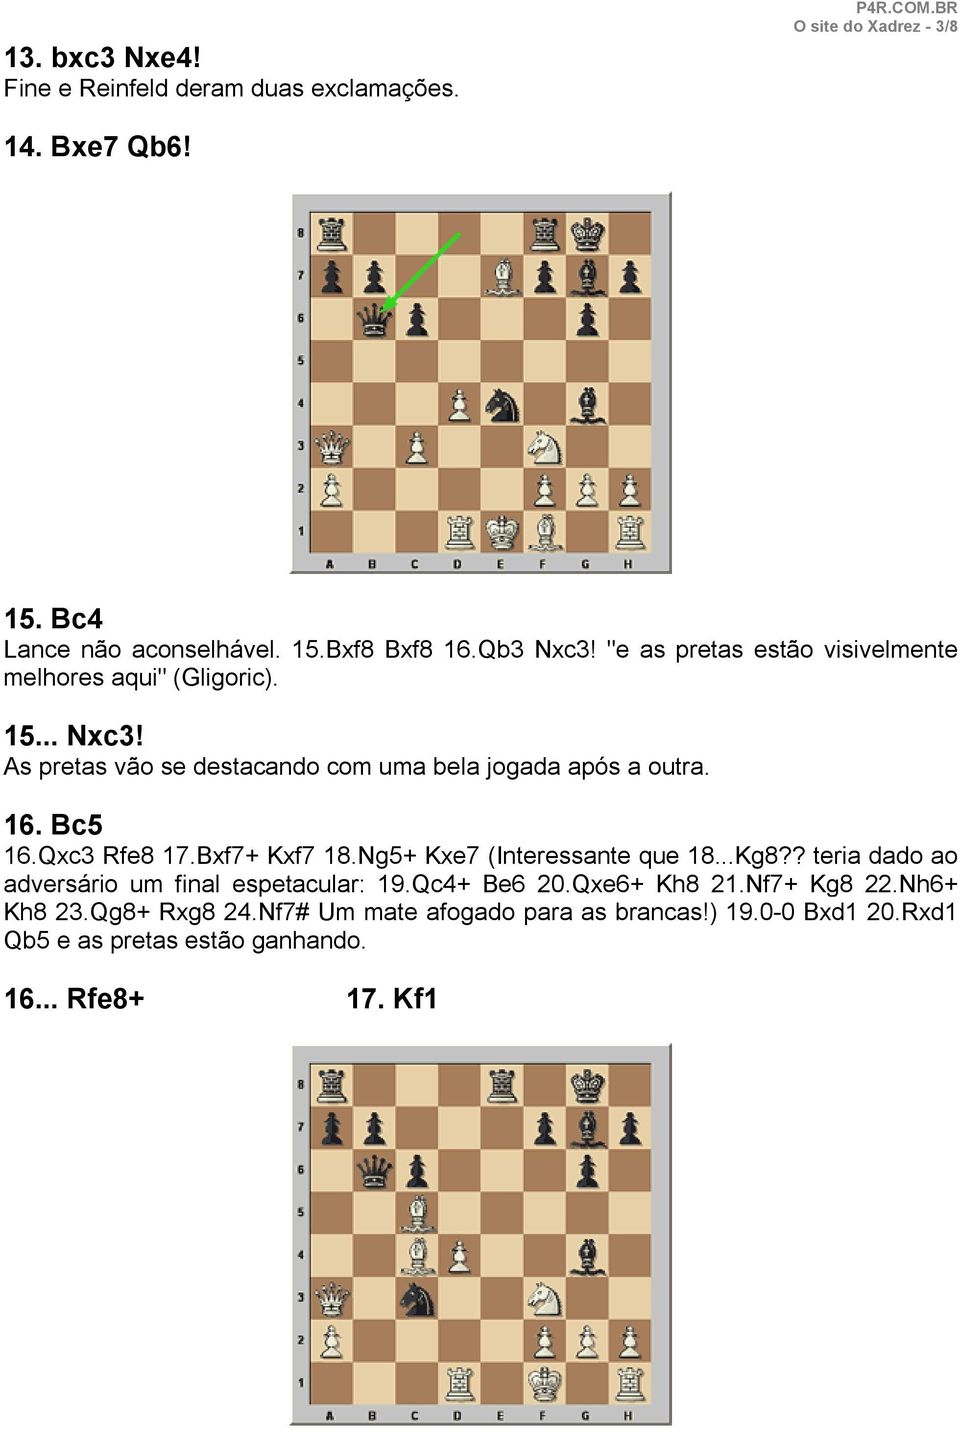 Bc5 16.Qxc3 Rfe8 17.Bxf7+ Kxf7 18.Ng5+ Kxe7 (Interessante que 18...Kg8?? teria dado ao adversário um final espetacular: 19.Qc4+ Be6 20.Qxe6+ Kh8 21.